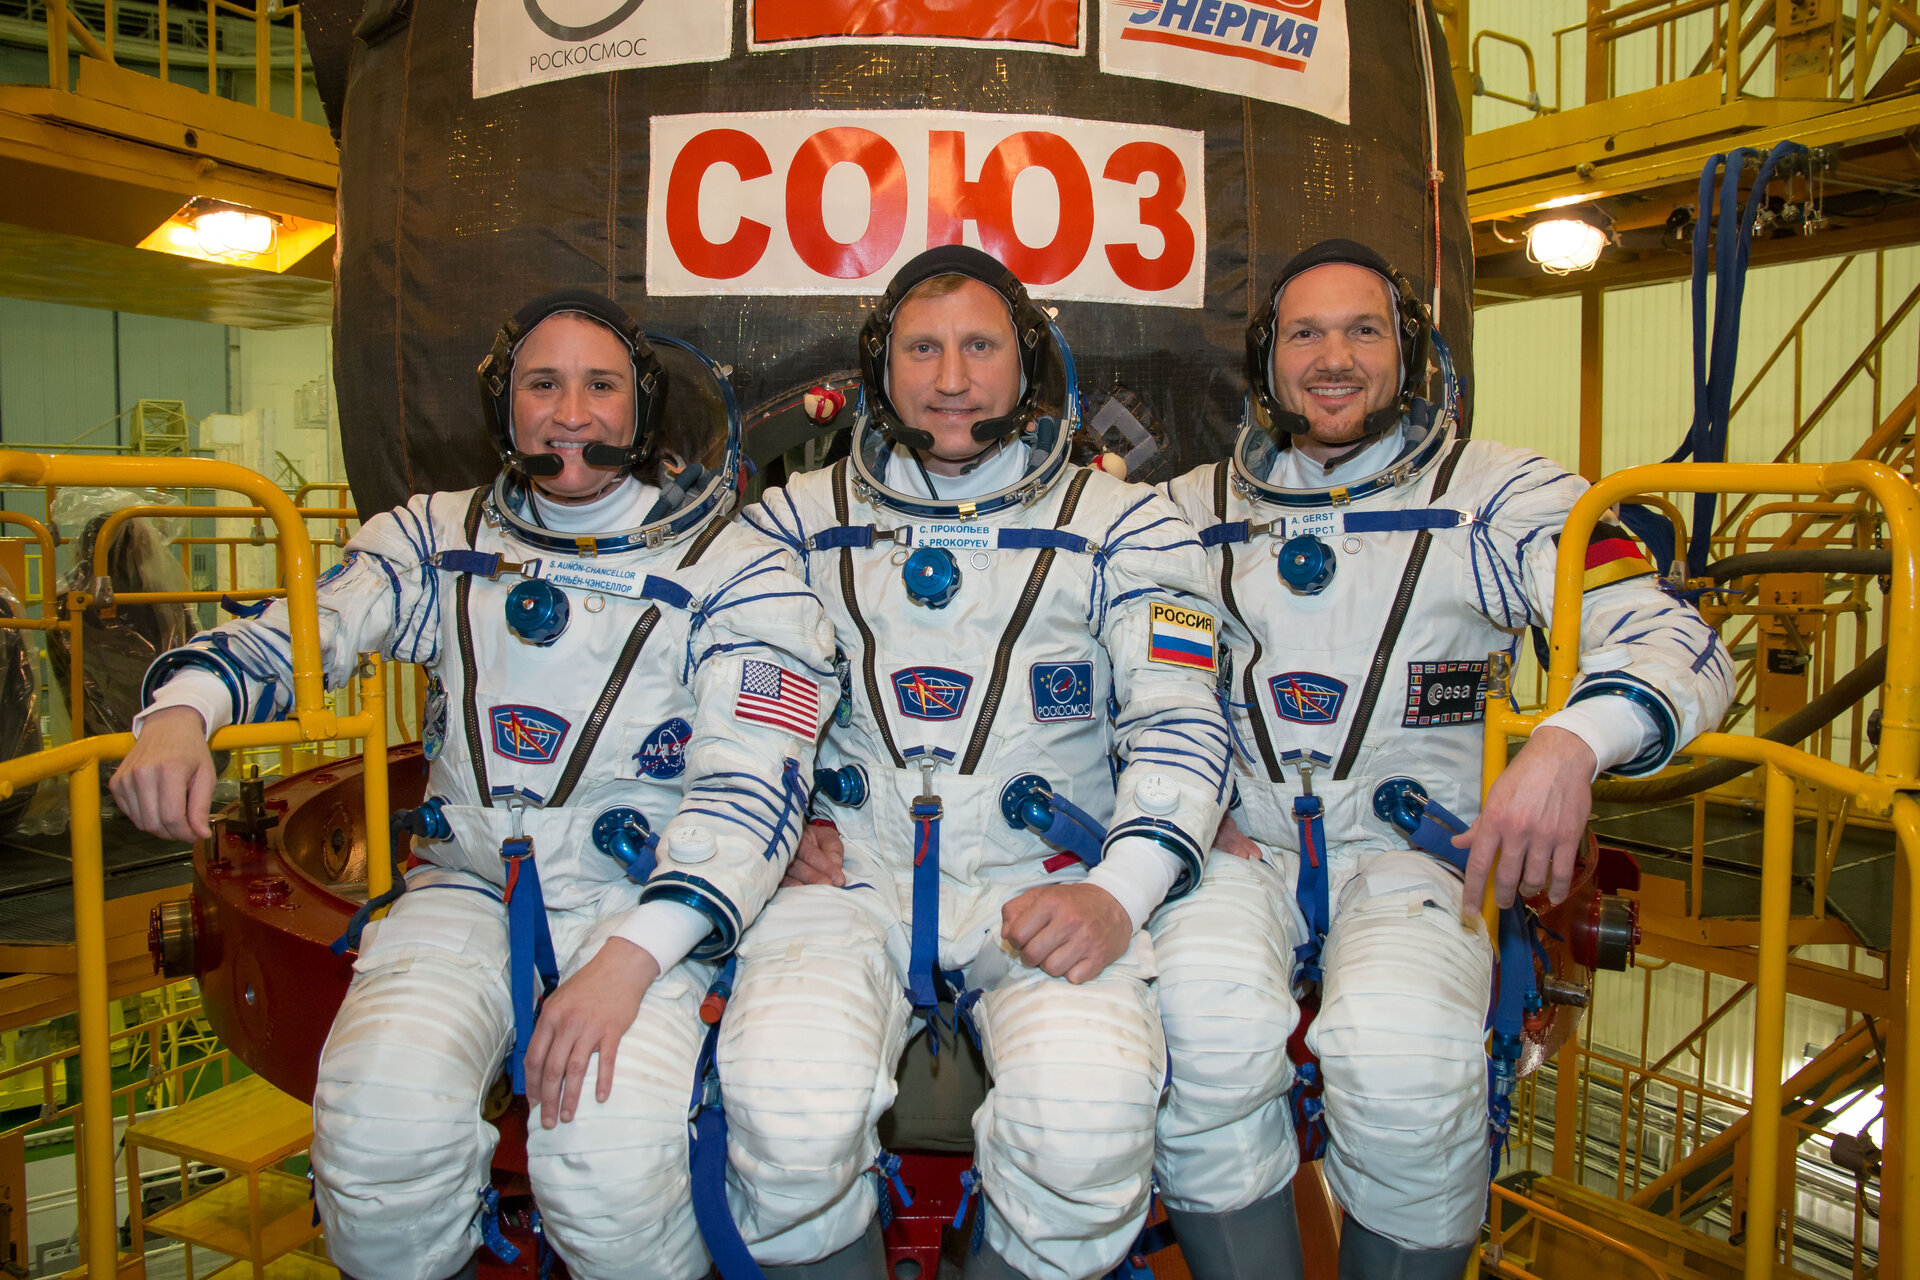 De bemaning van Sojoez MS-09: Serena Auñón-Chancellor (NASA), Sergueï Prokopyev (Roskosmos) en Alexander Gerst (ESA)